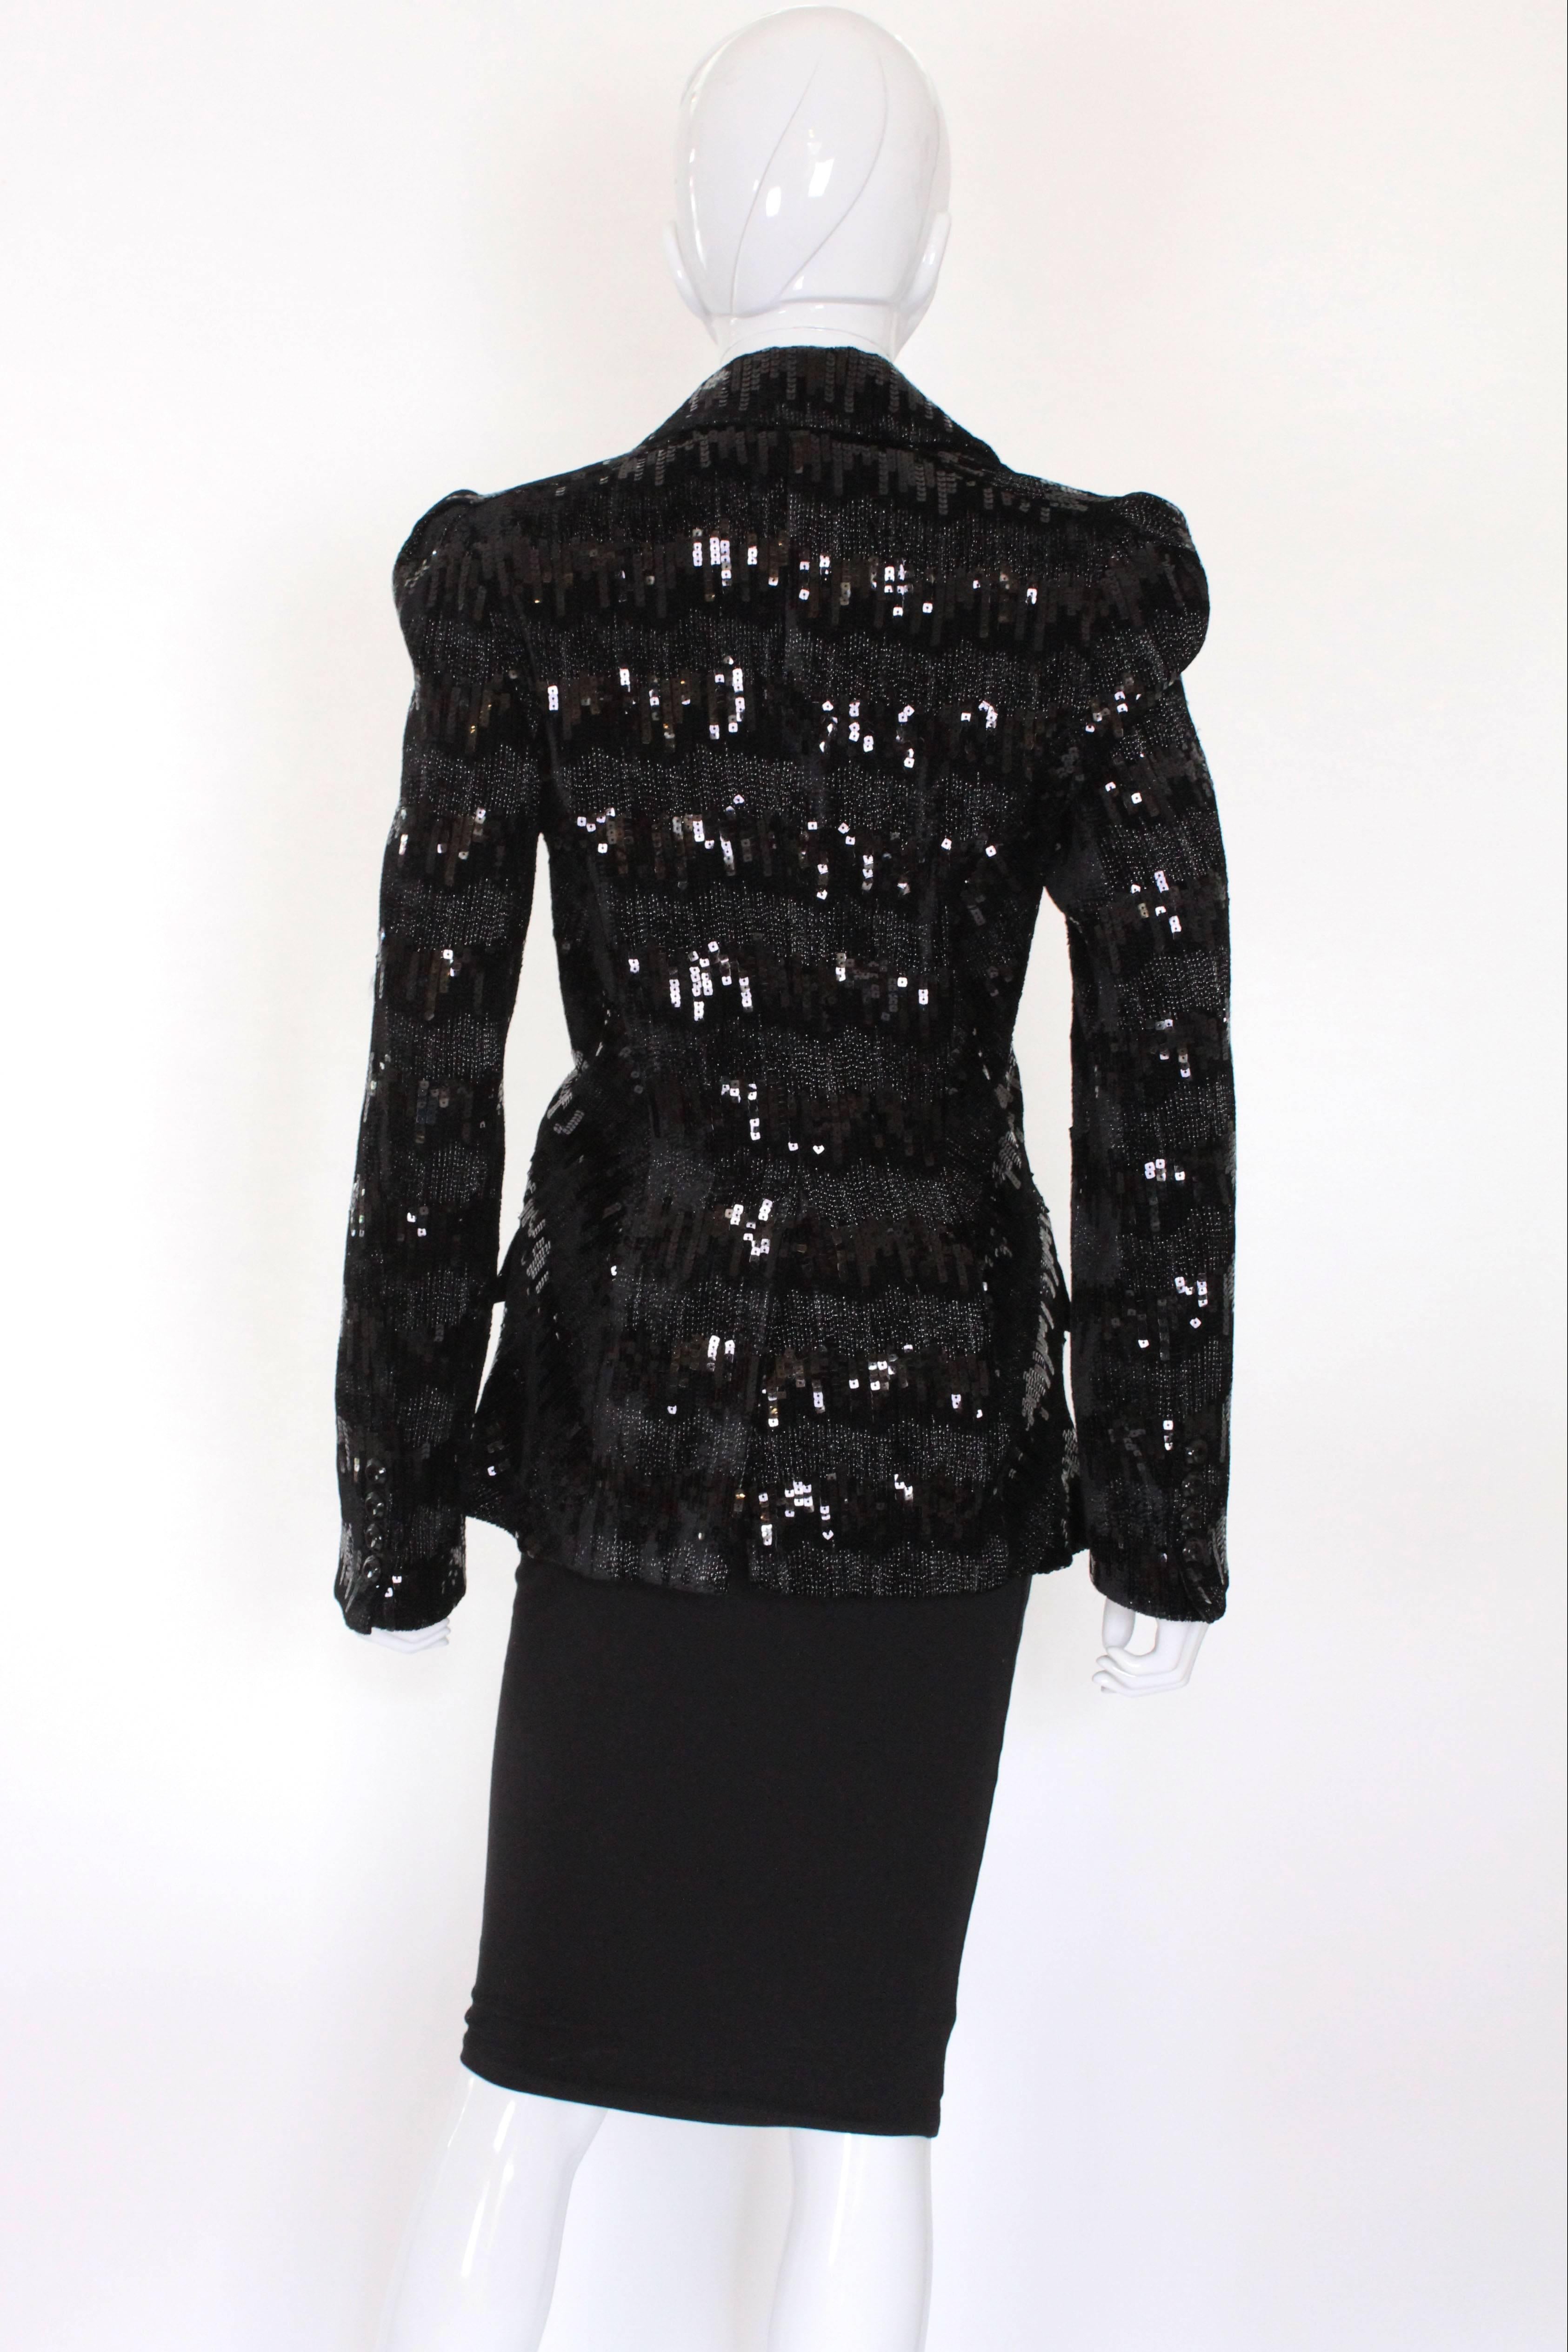 Mid 2000s Black Sequin Diane von Furstenerg Jacket 1